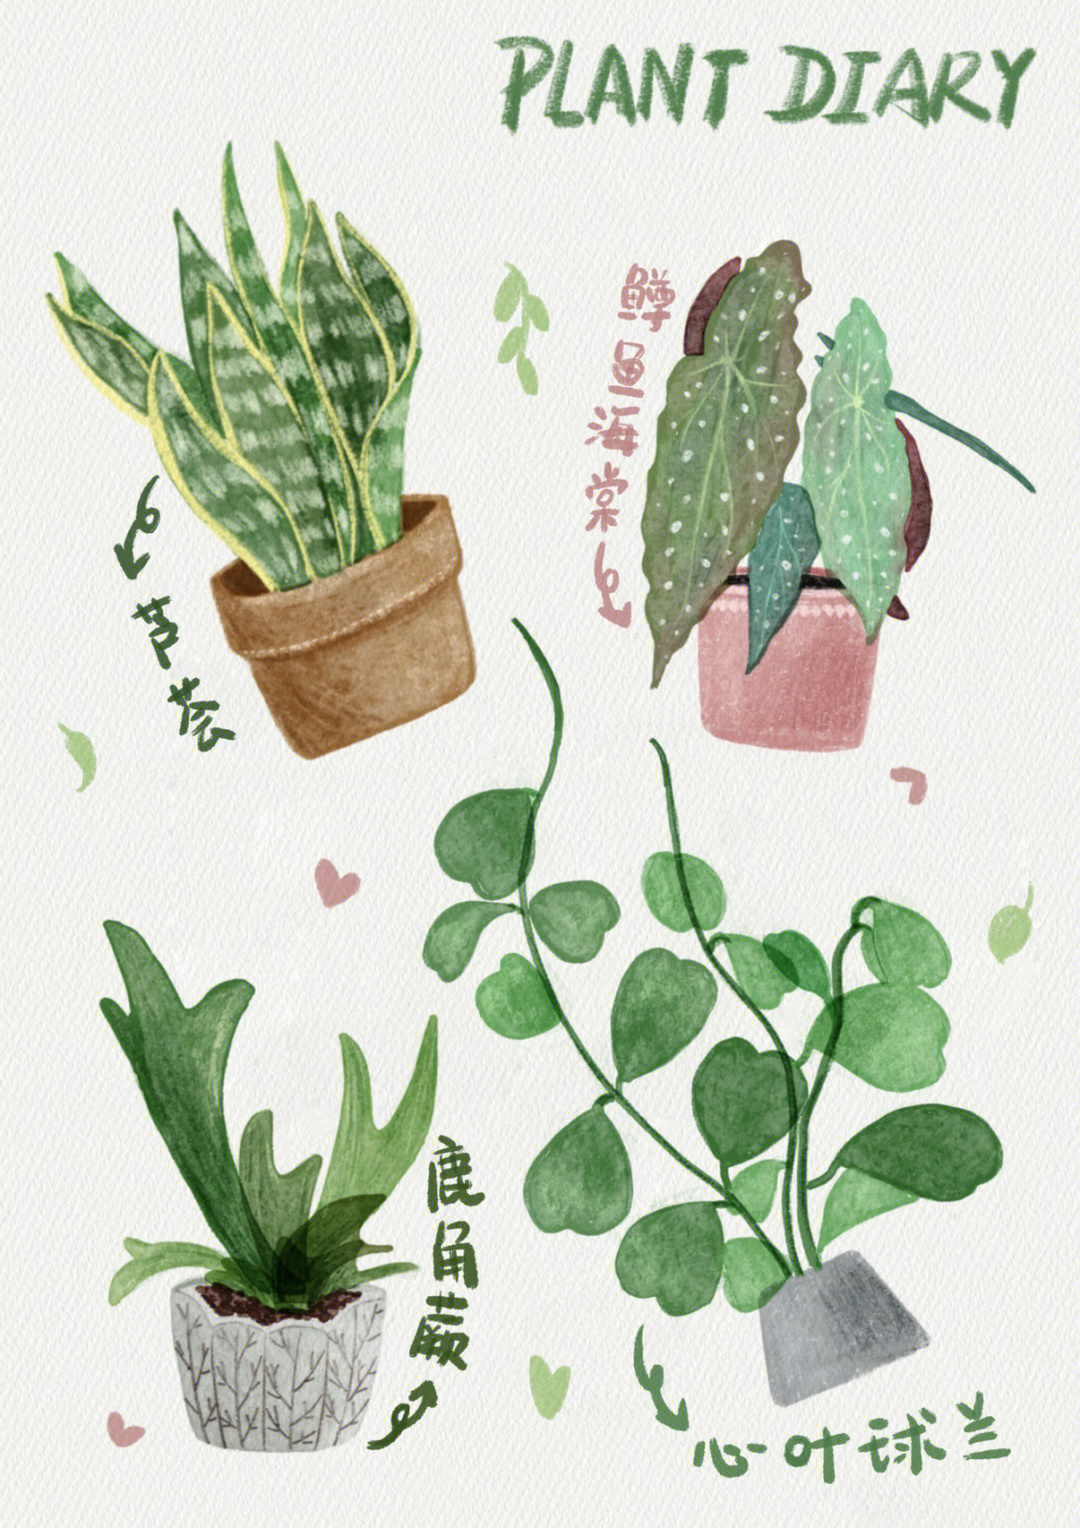 接着画植物吧,喜欢植物的一起画起来吧